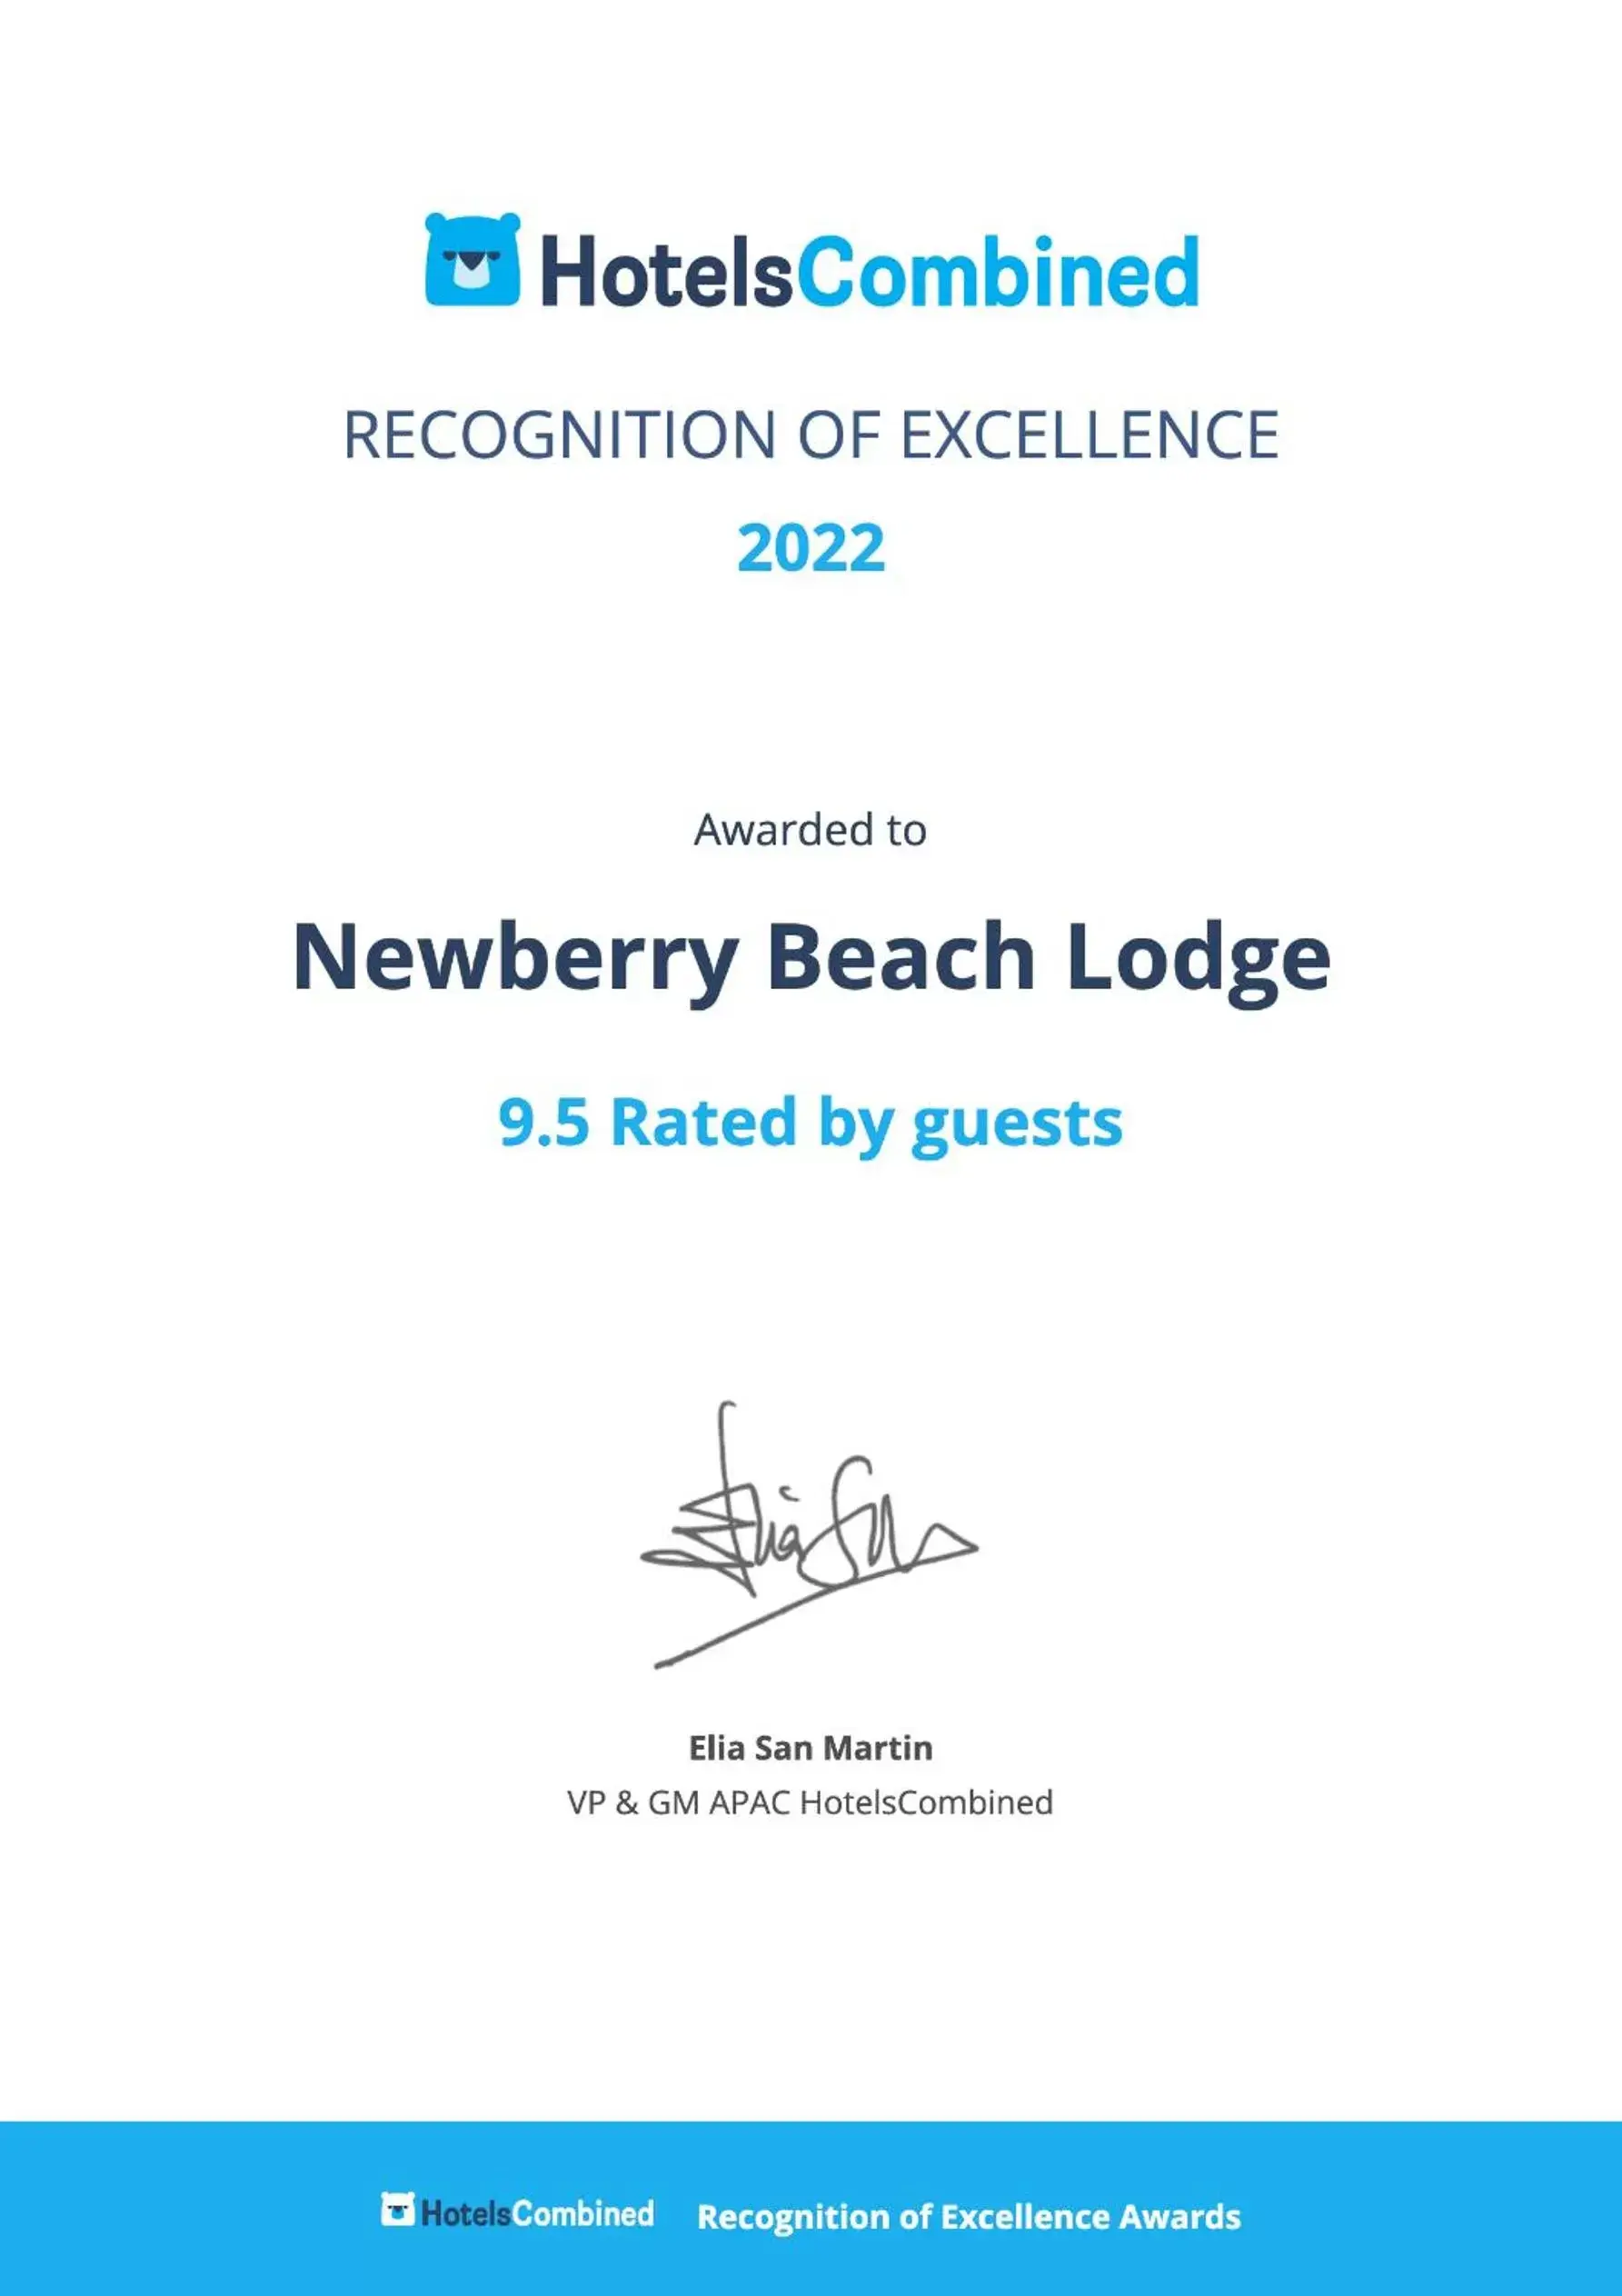 Certificate/Award in Newberry Beach lodge